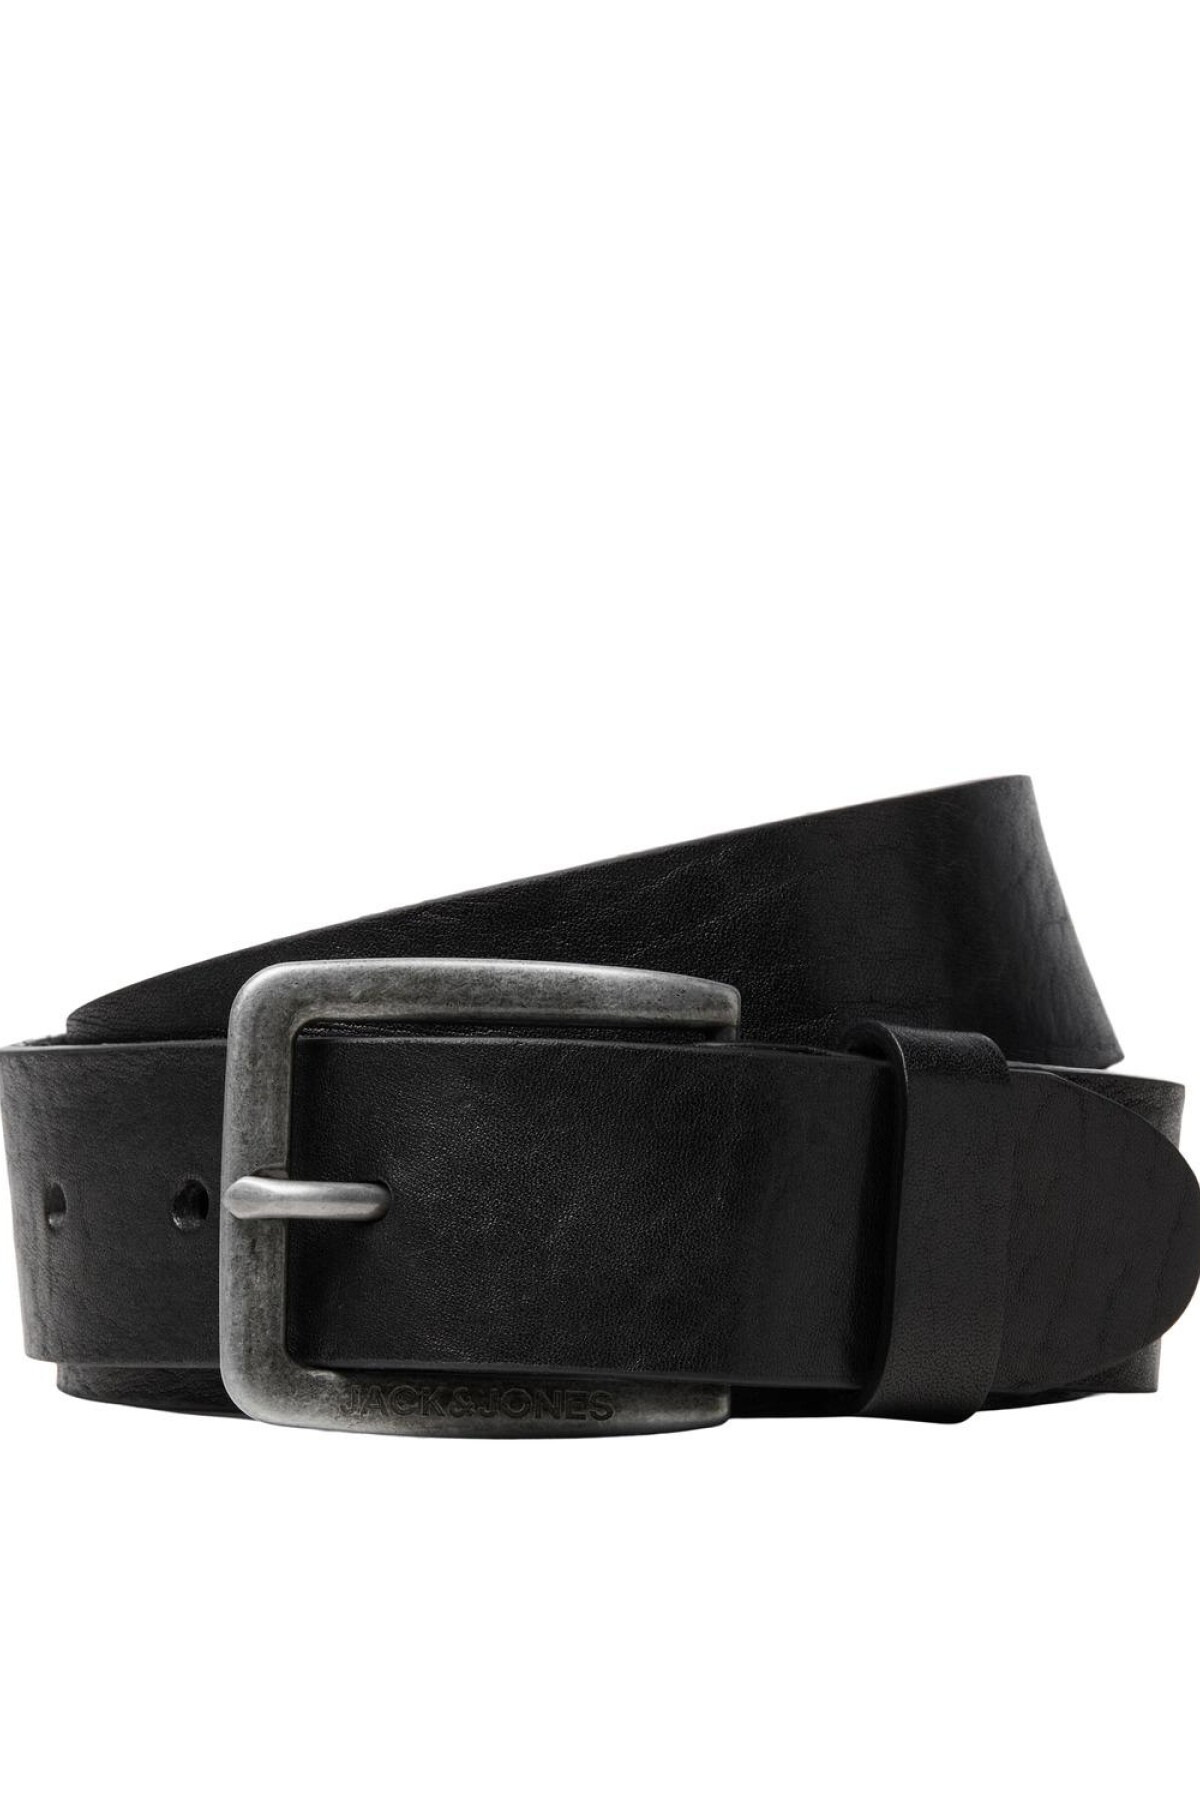 Cinturon Verona Black